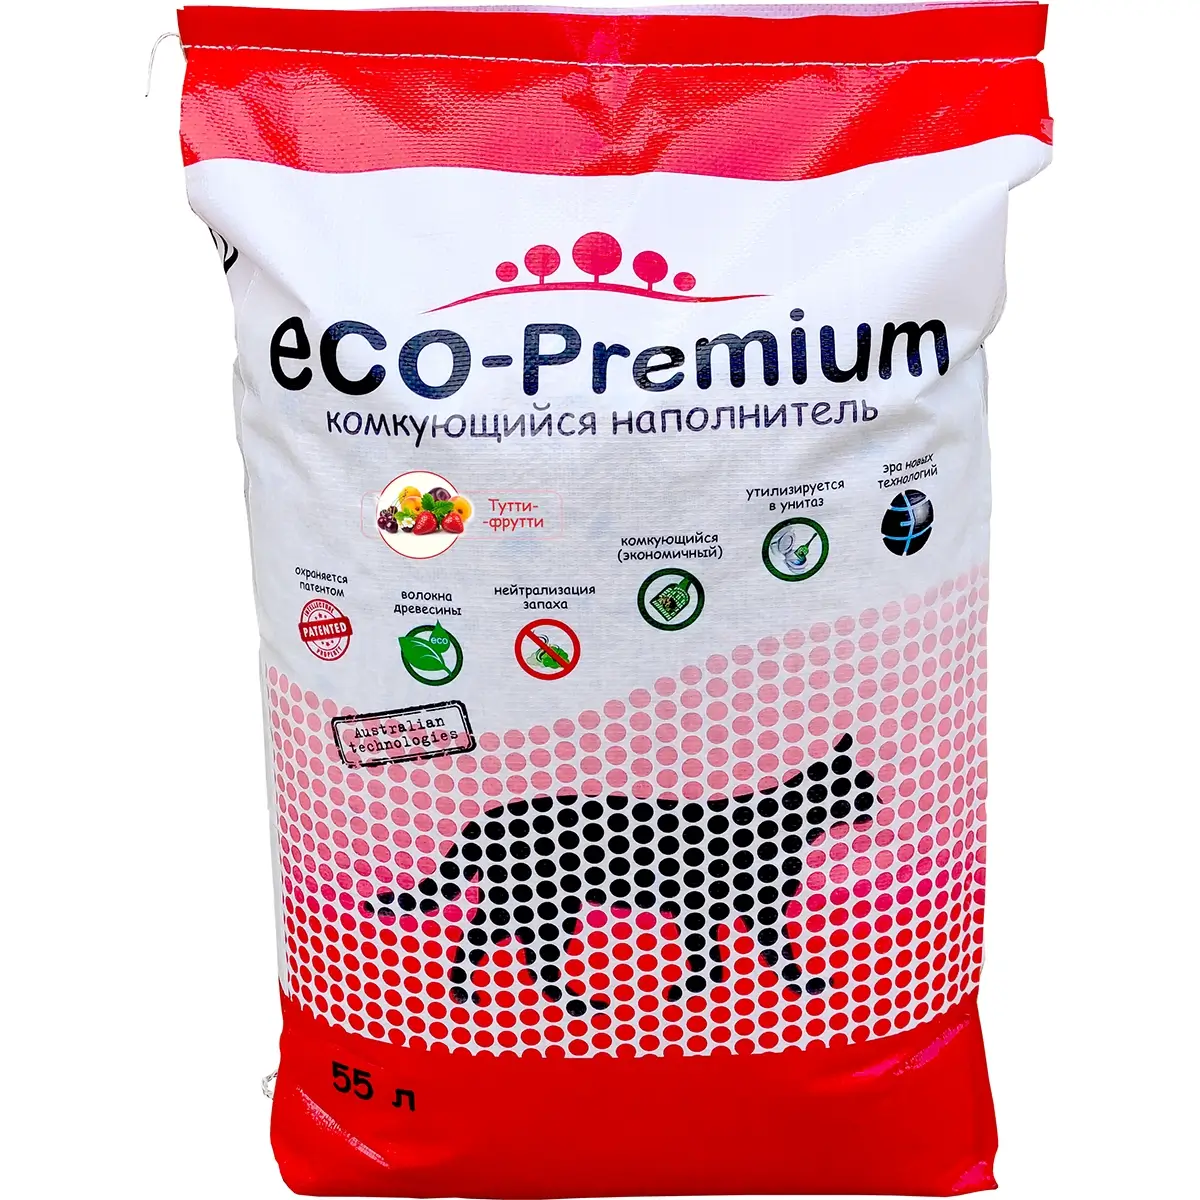 Наполнитель ECO-Premium для кошачьего туалета (Древесный комкующийся с ароматом тутти-фрутти, 55л)